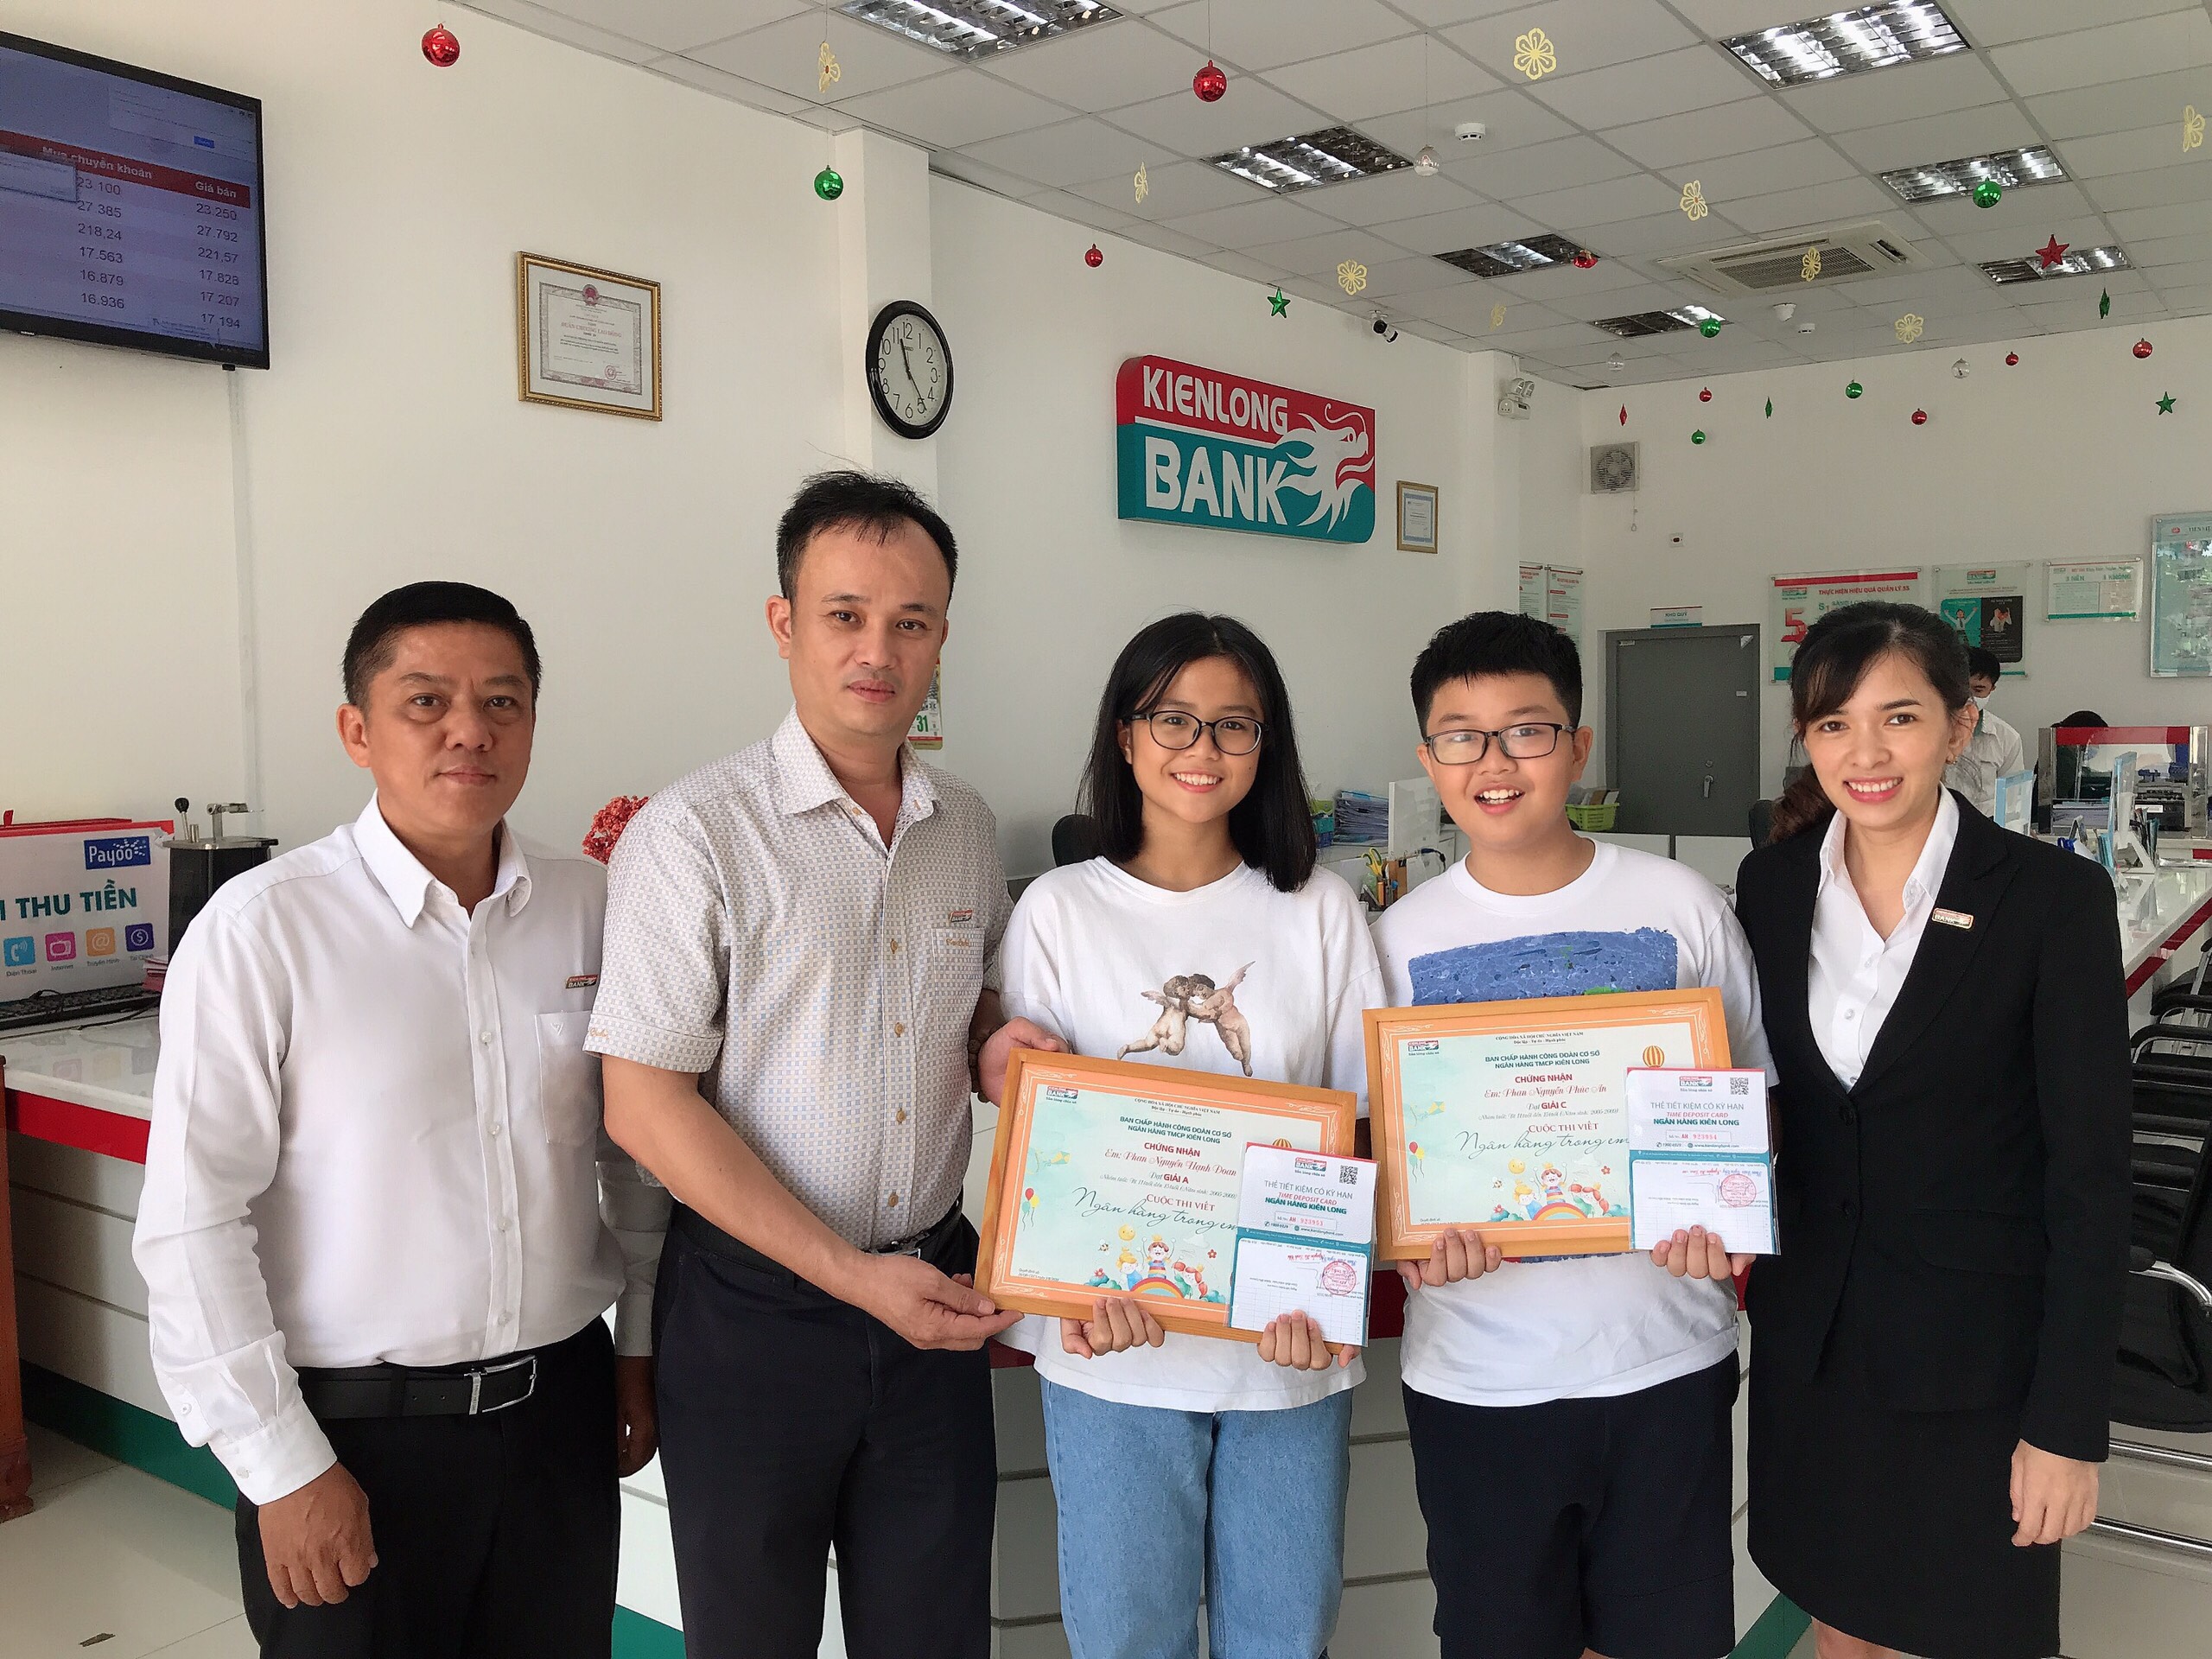 Tác phẩm duy nhất của Kienlongbank đạt giải cuộc thi viết “Ngân hàng trong em” do Công đoàn Ngân hàng Việt Nam tổ chức